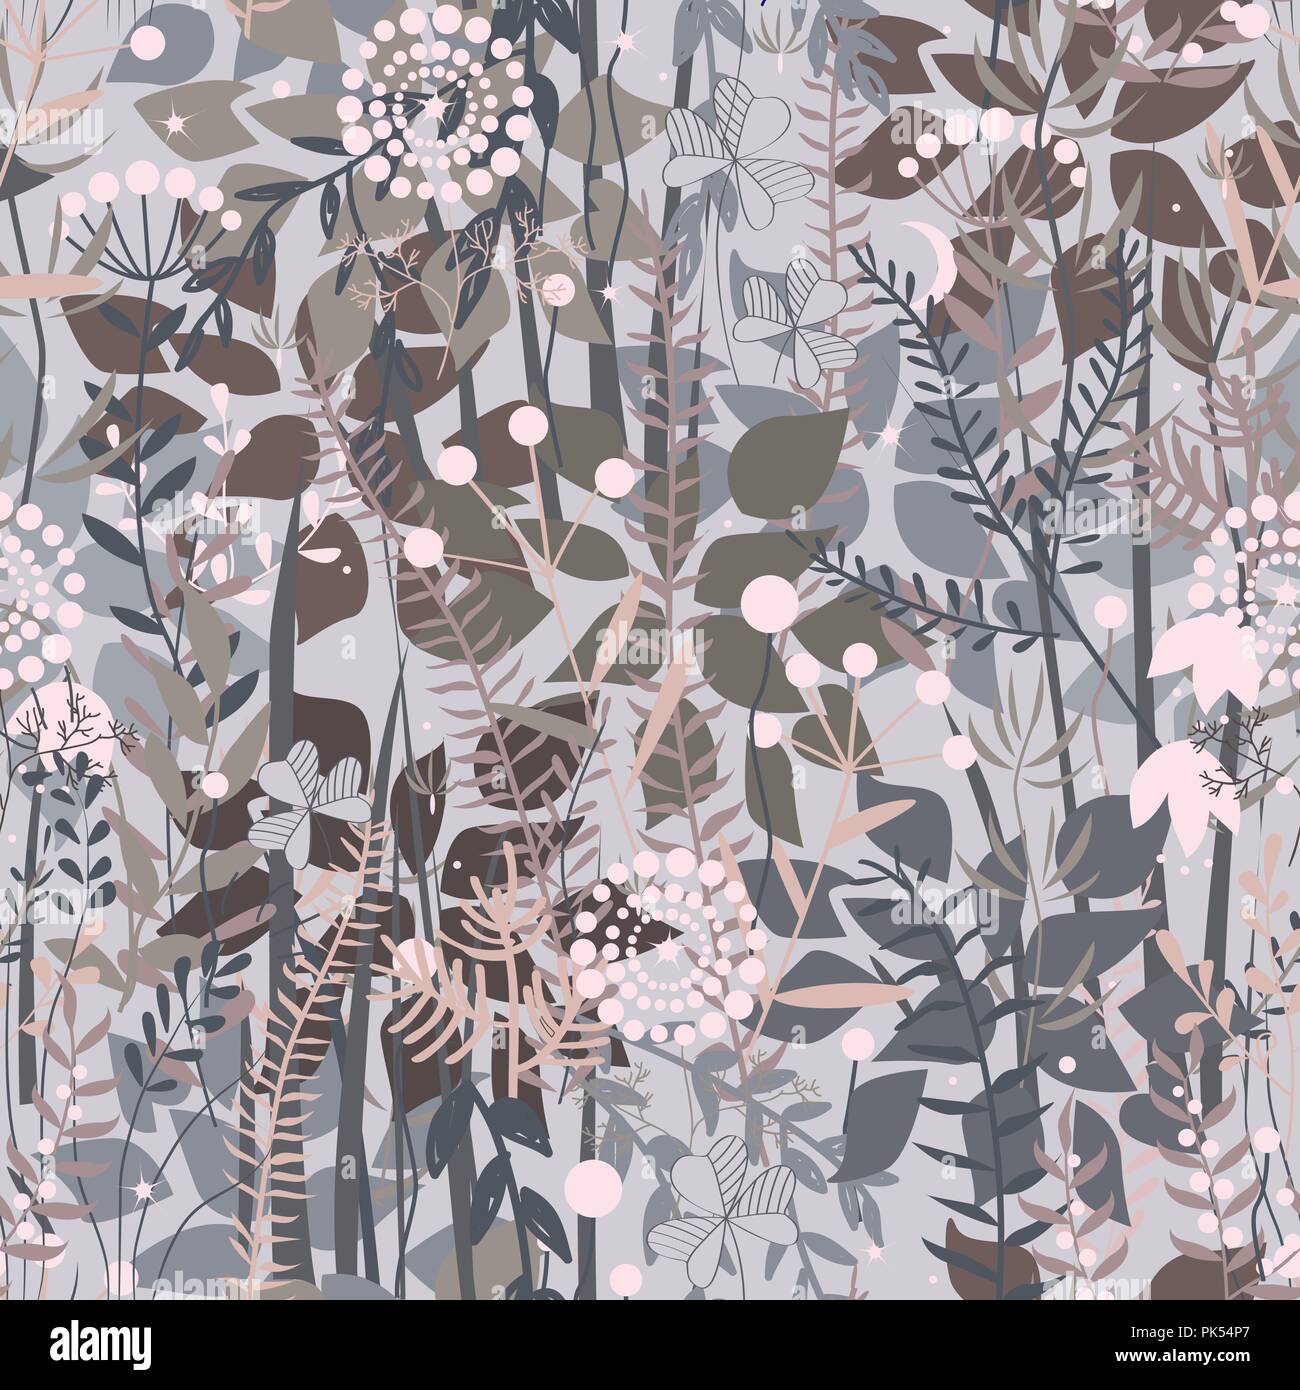 Forêt féerique. Transparente avec motif floral doodle plantes, fleurs, buissons, et de l'herbe. Palette pastel agréable, gris, rose et marron. Vecto Illustration de Vecteur